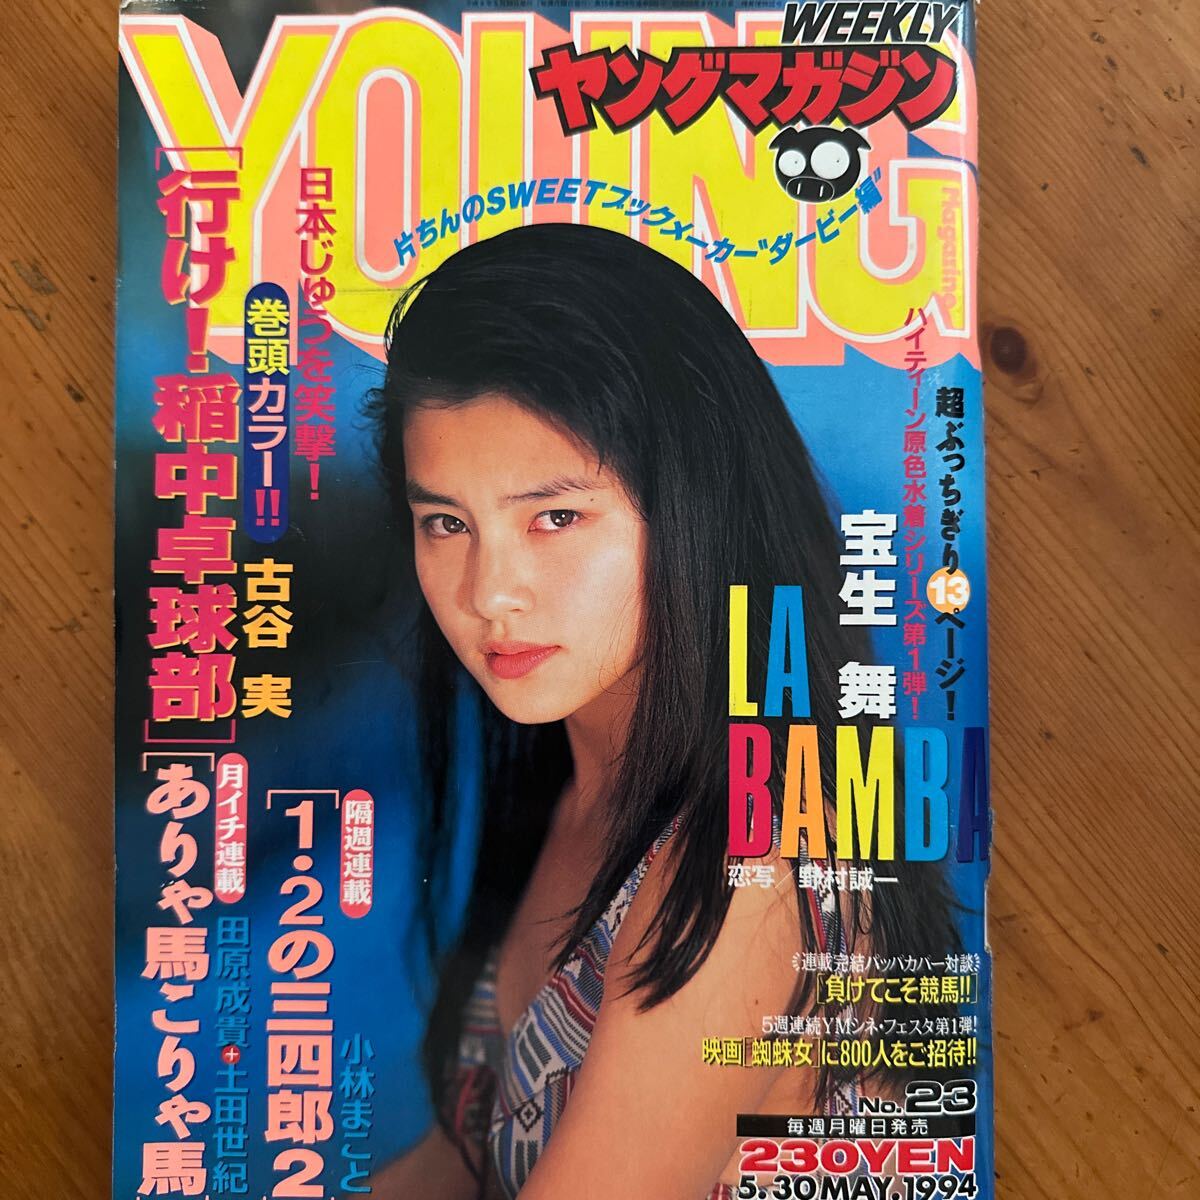 3247 ヤングマガジン 1994/5 宝生舞:表紙+グラビア LA BANBA in MEXICO 13Ｐハイレグ水着セクシーの画像1